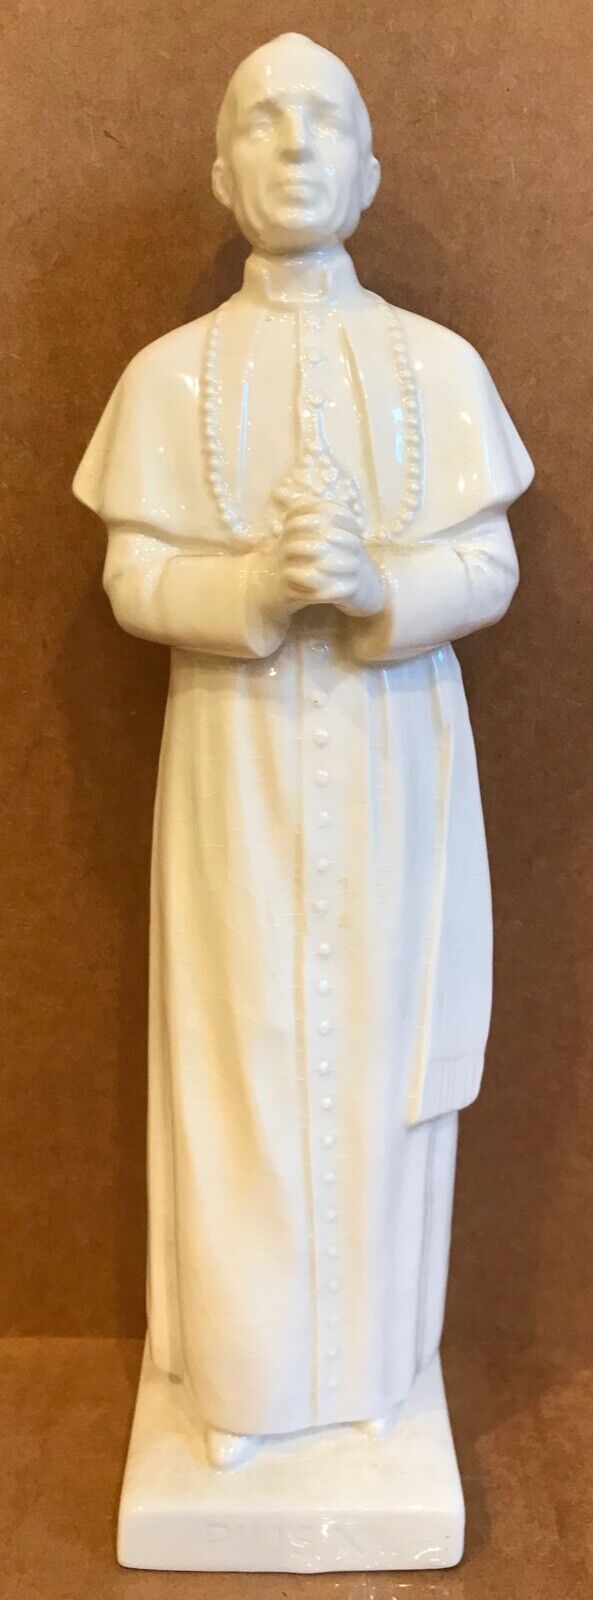 Venerable Pius XII porcelain religious vintage St. Statue Catholic saint